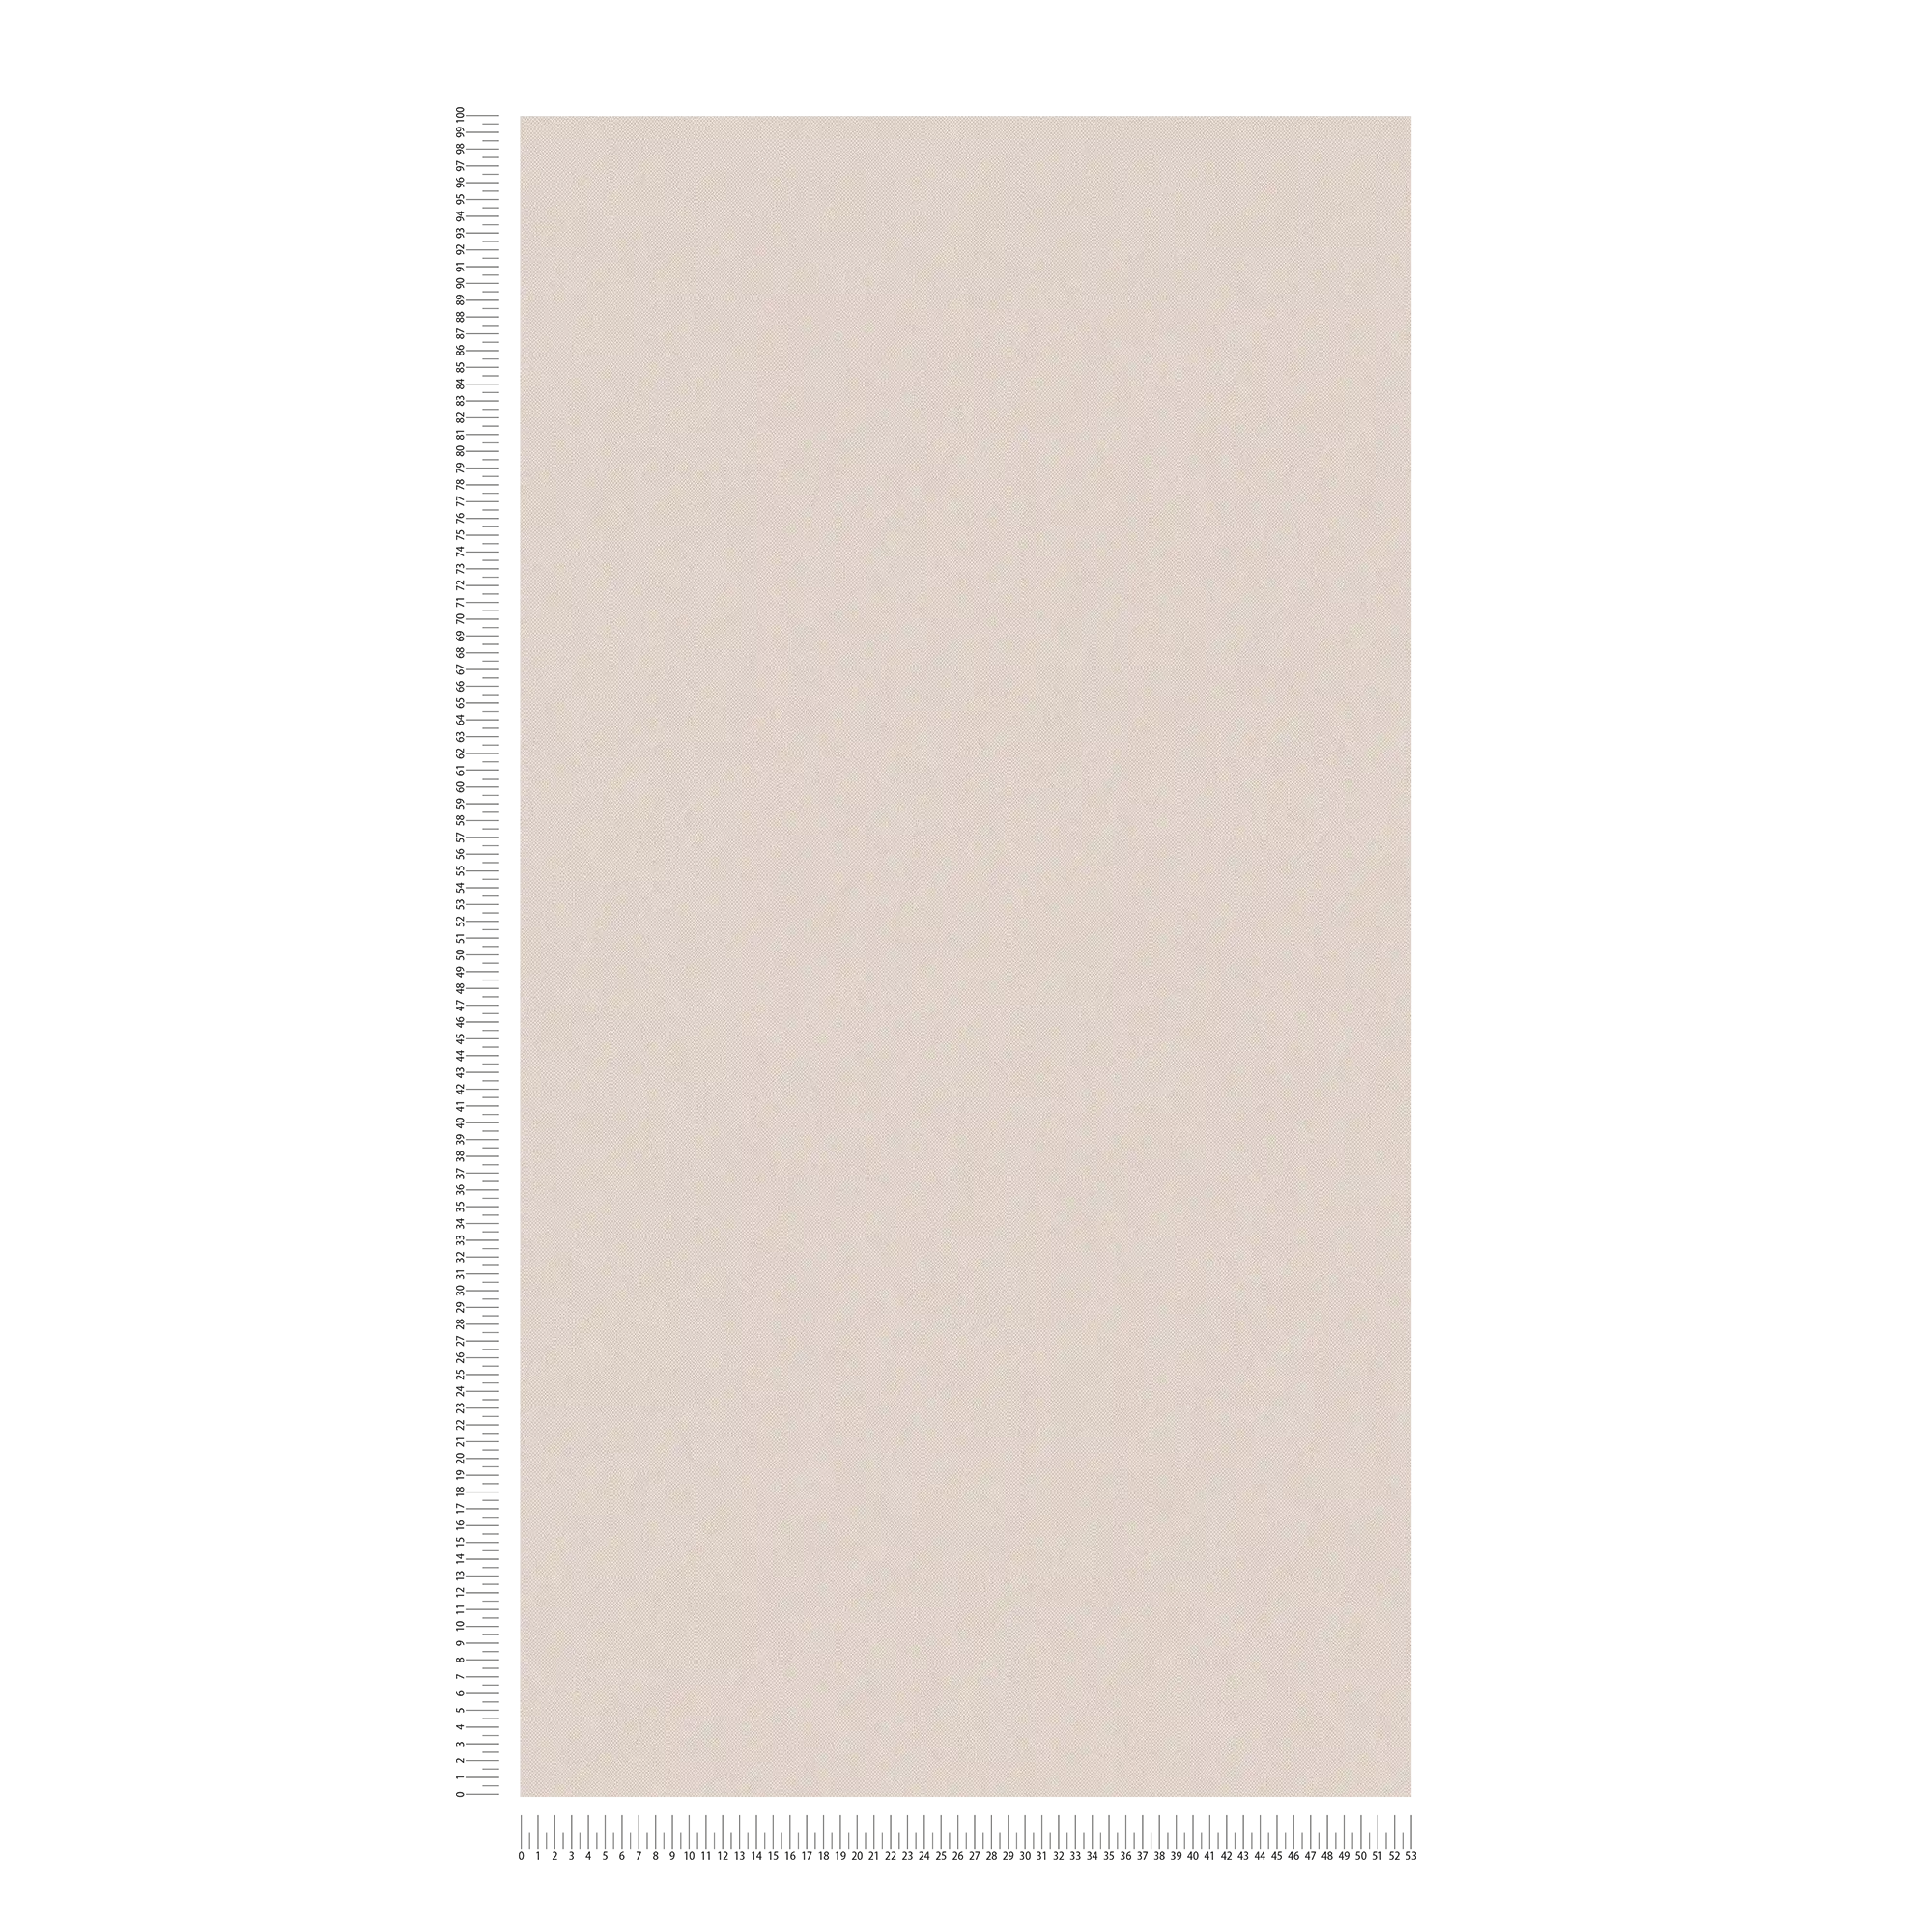             Papier peint intissé beige clair uni avec structure textile - beige, crème
        